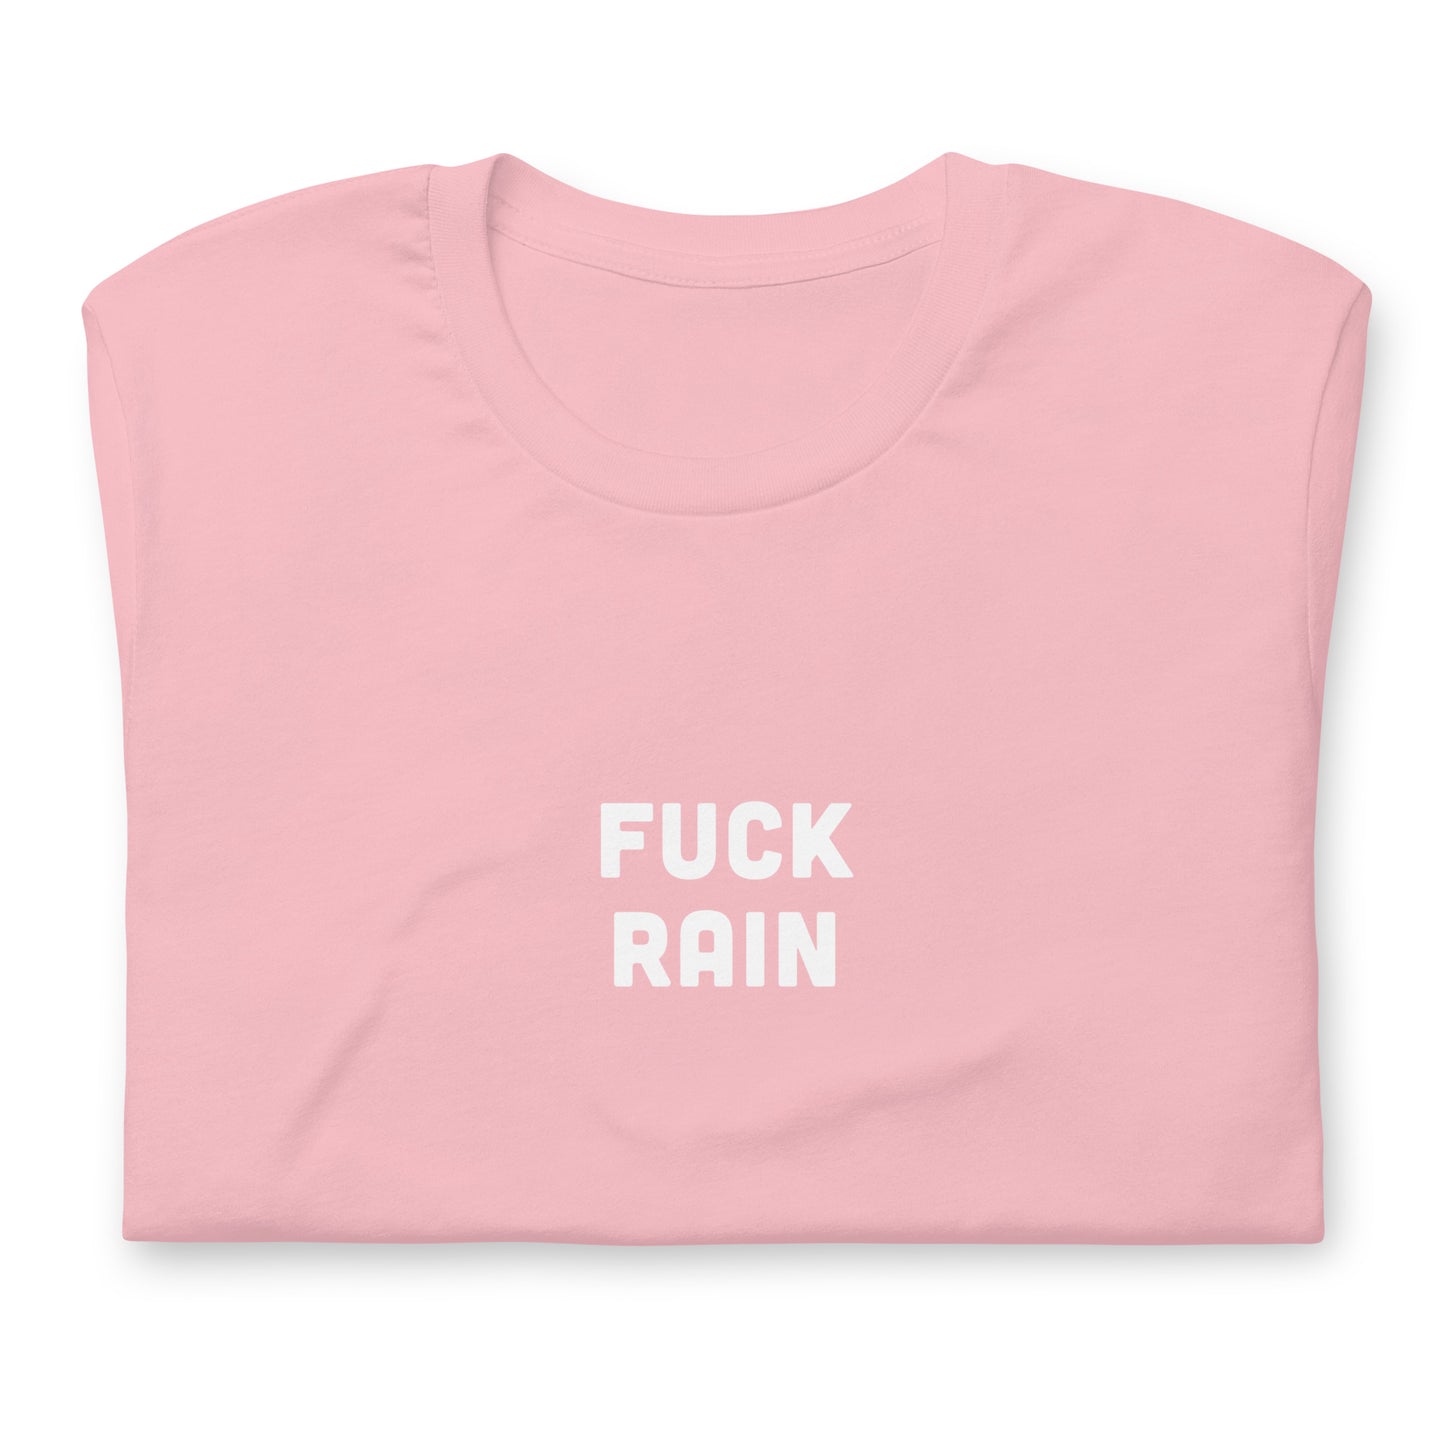 Fuck Rain T-Shirt Size S Color Asphalt